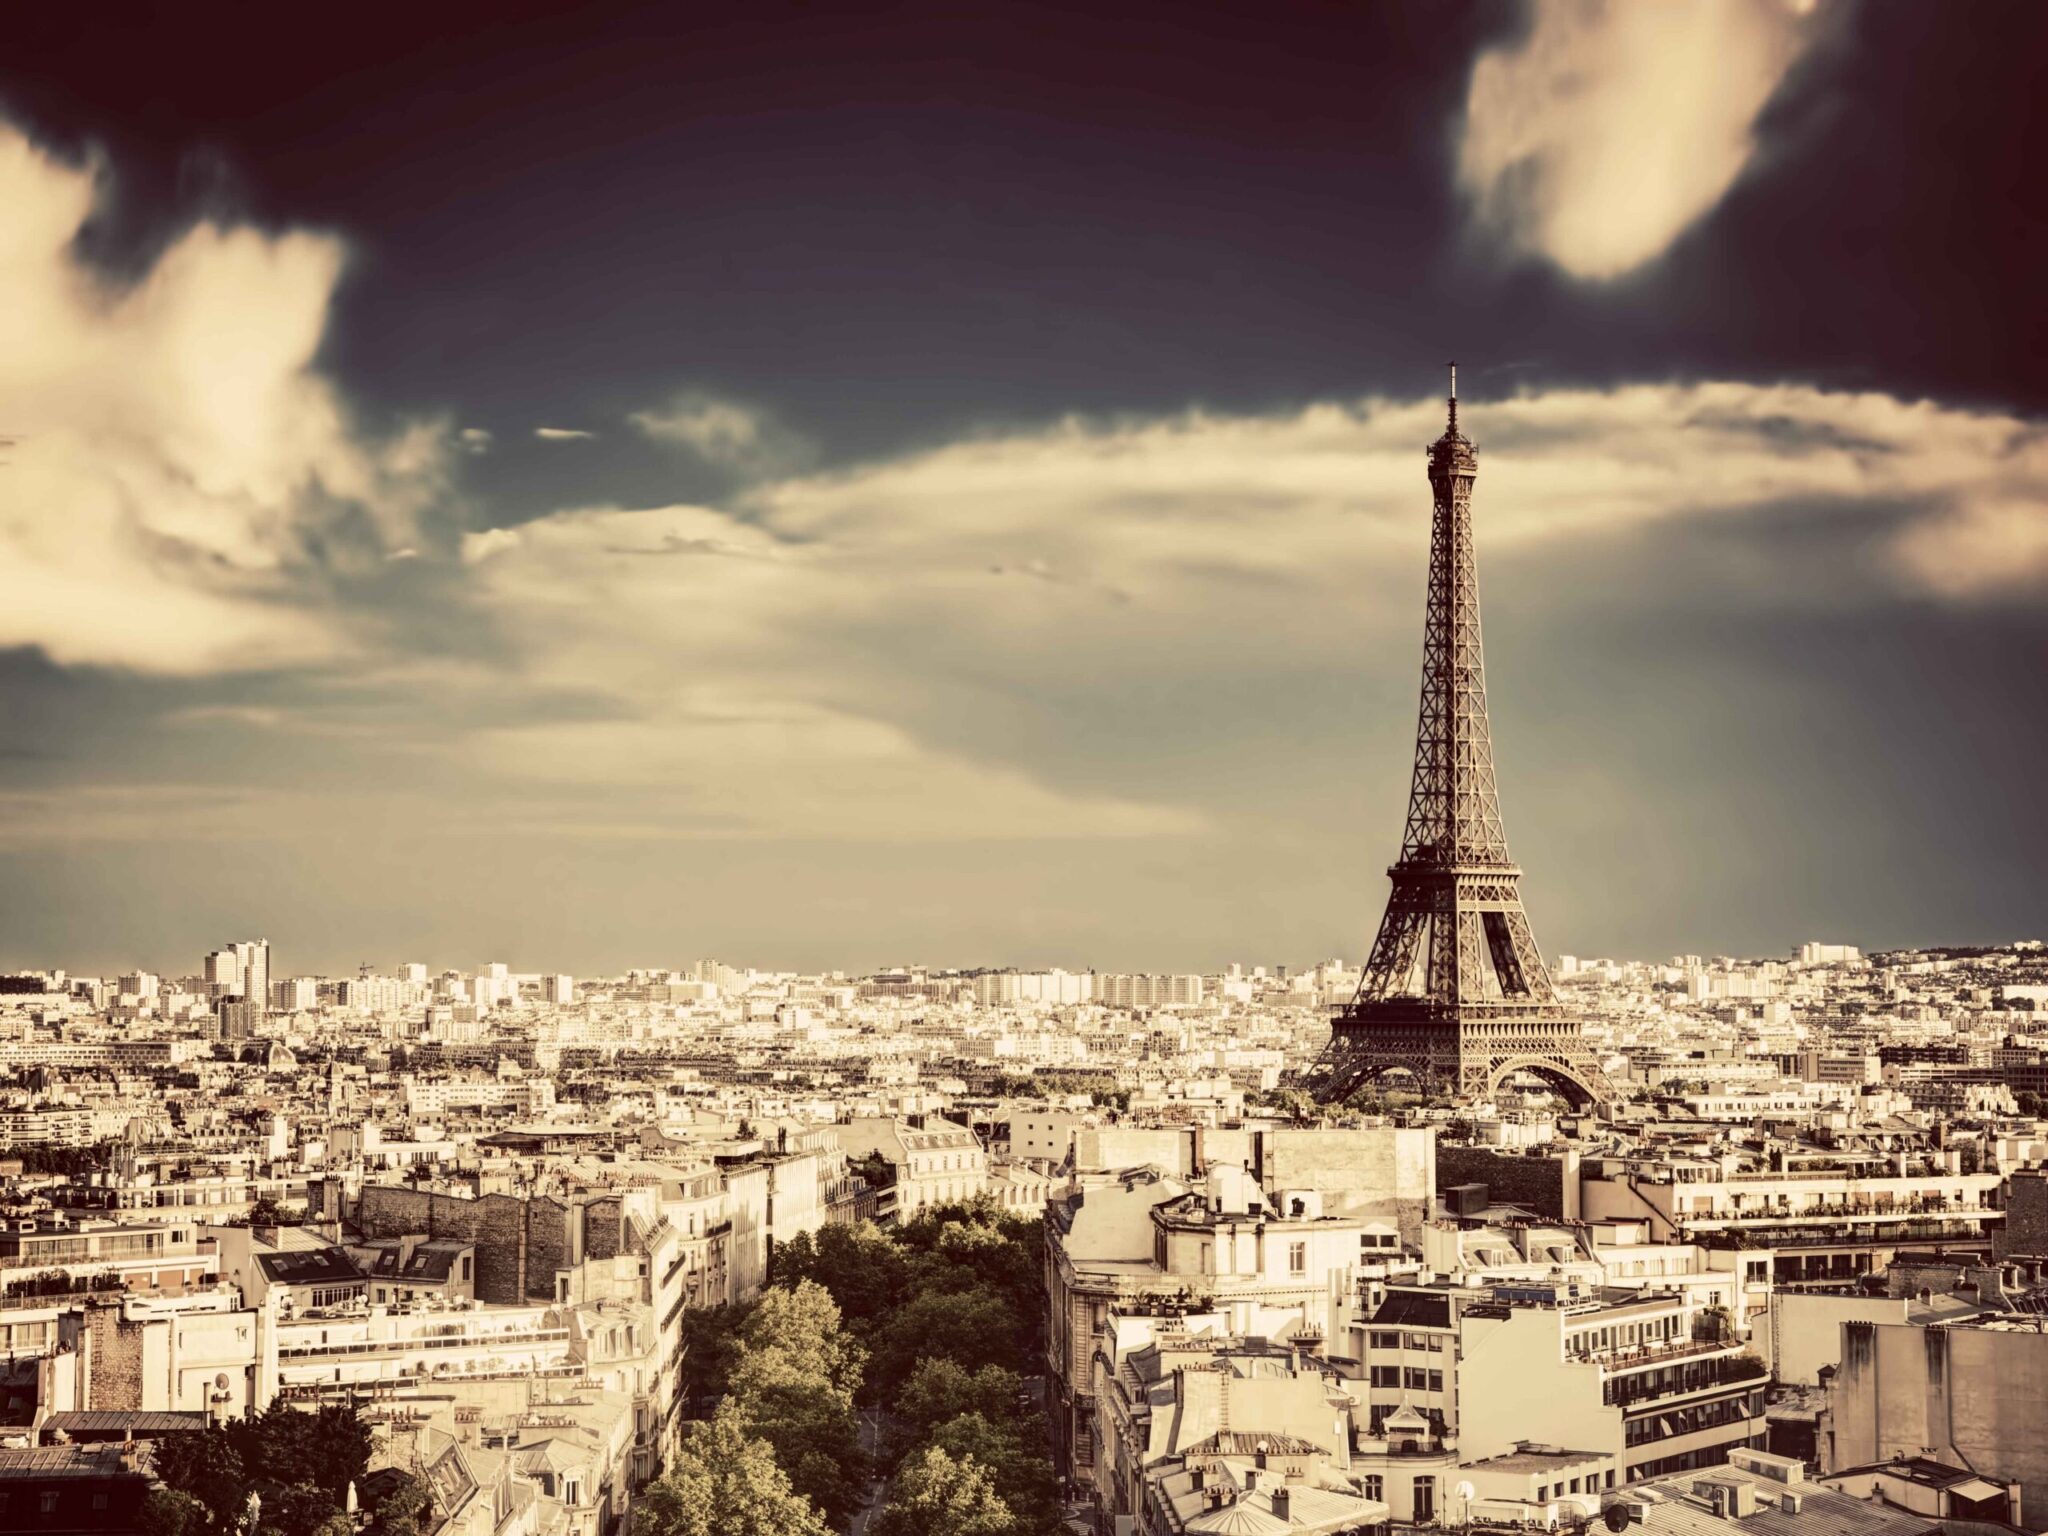 A view of paris city